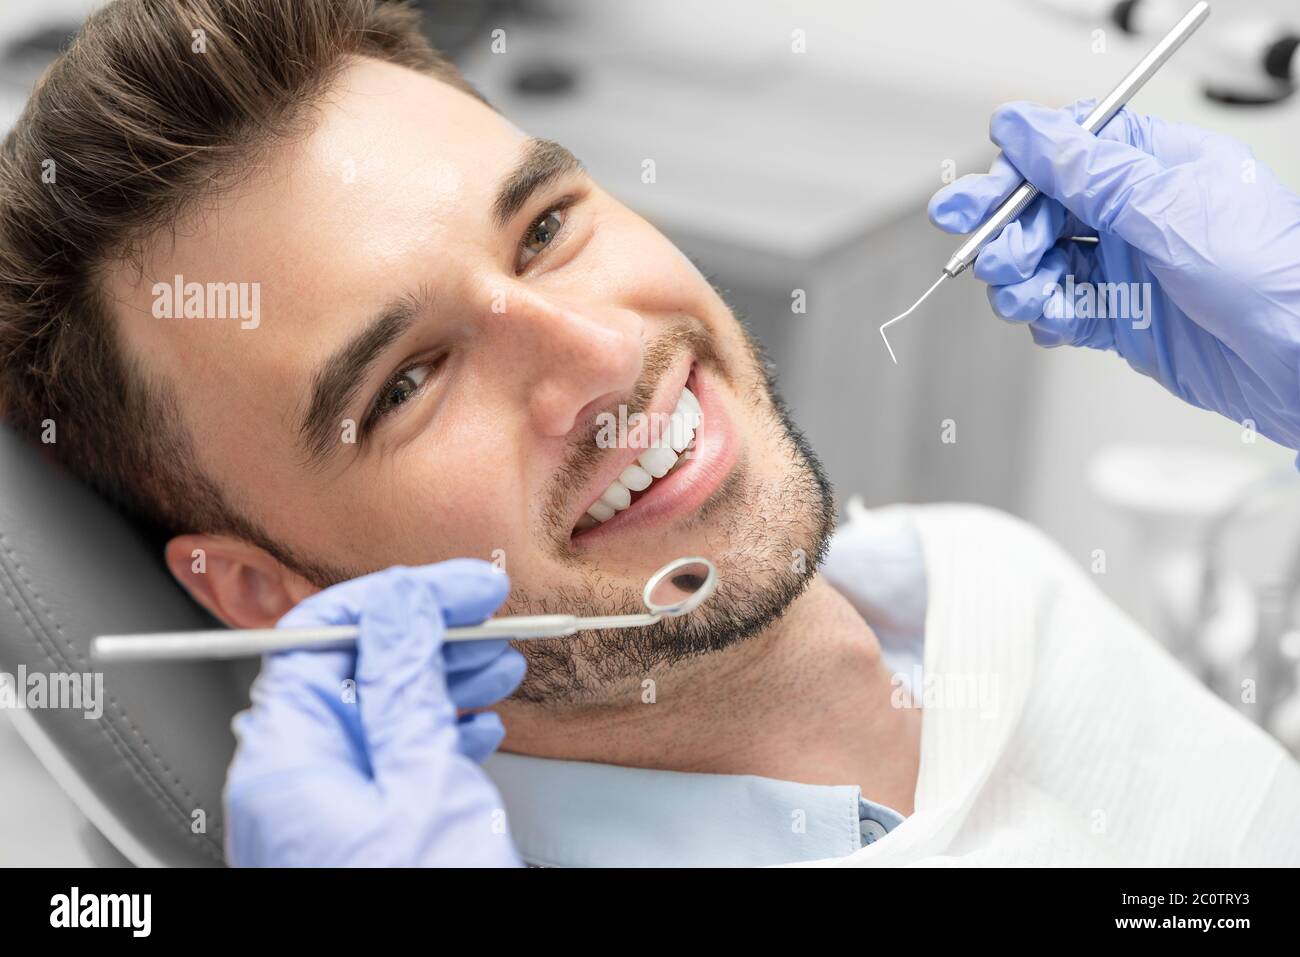 Ayant examiné les dents de l'homme à des dentistes. Aperçu de la prévention de la carie dentaire Banque D'Images